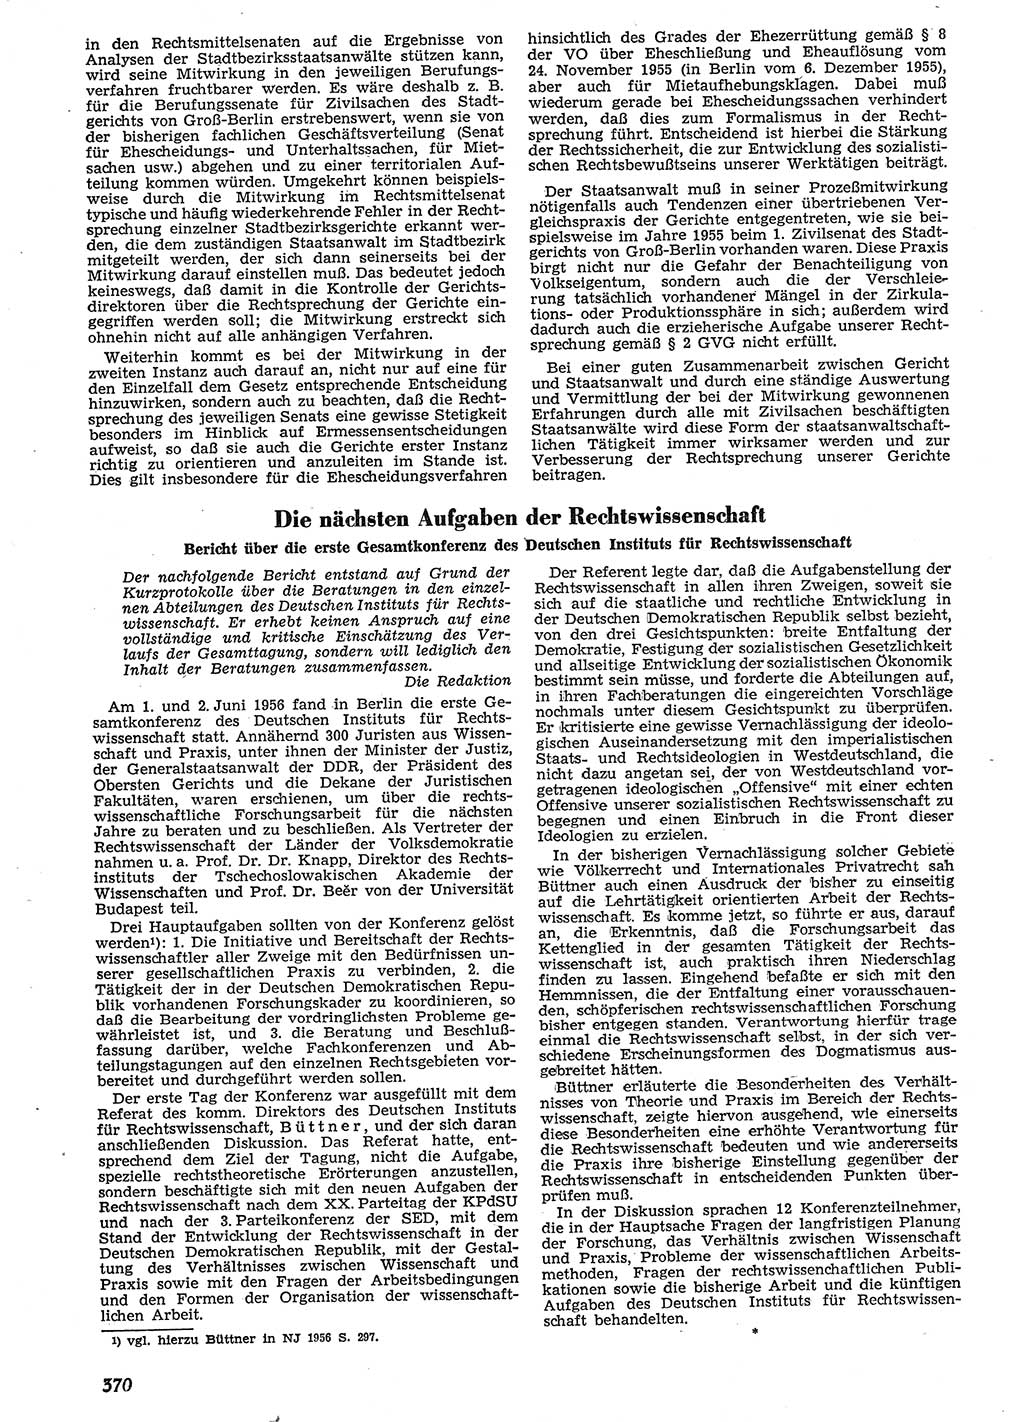 Neue Justiz (NJ), Zeitschrift für Recht und Rechtswissenschaft [Deutsche Demokratische Republik (DDR)], 10. Jahrgang 1956, Seite 370 (NJ DDR 1956, S. 370)